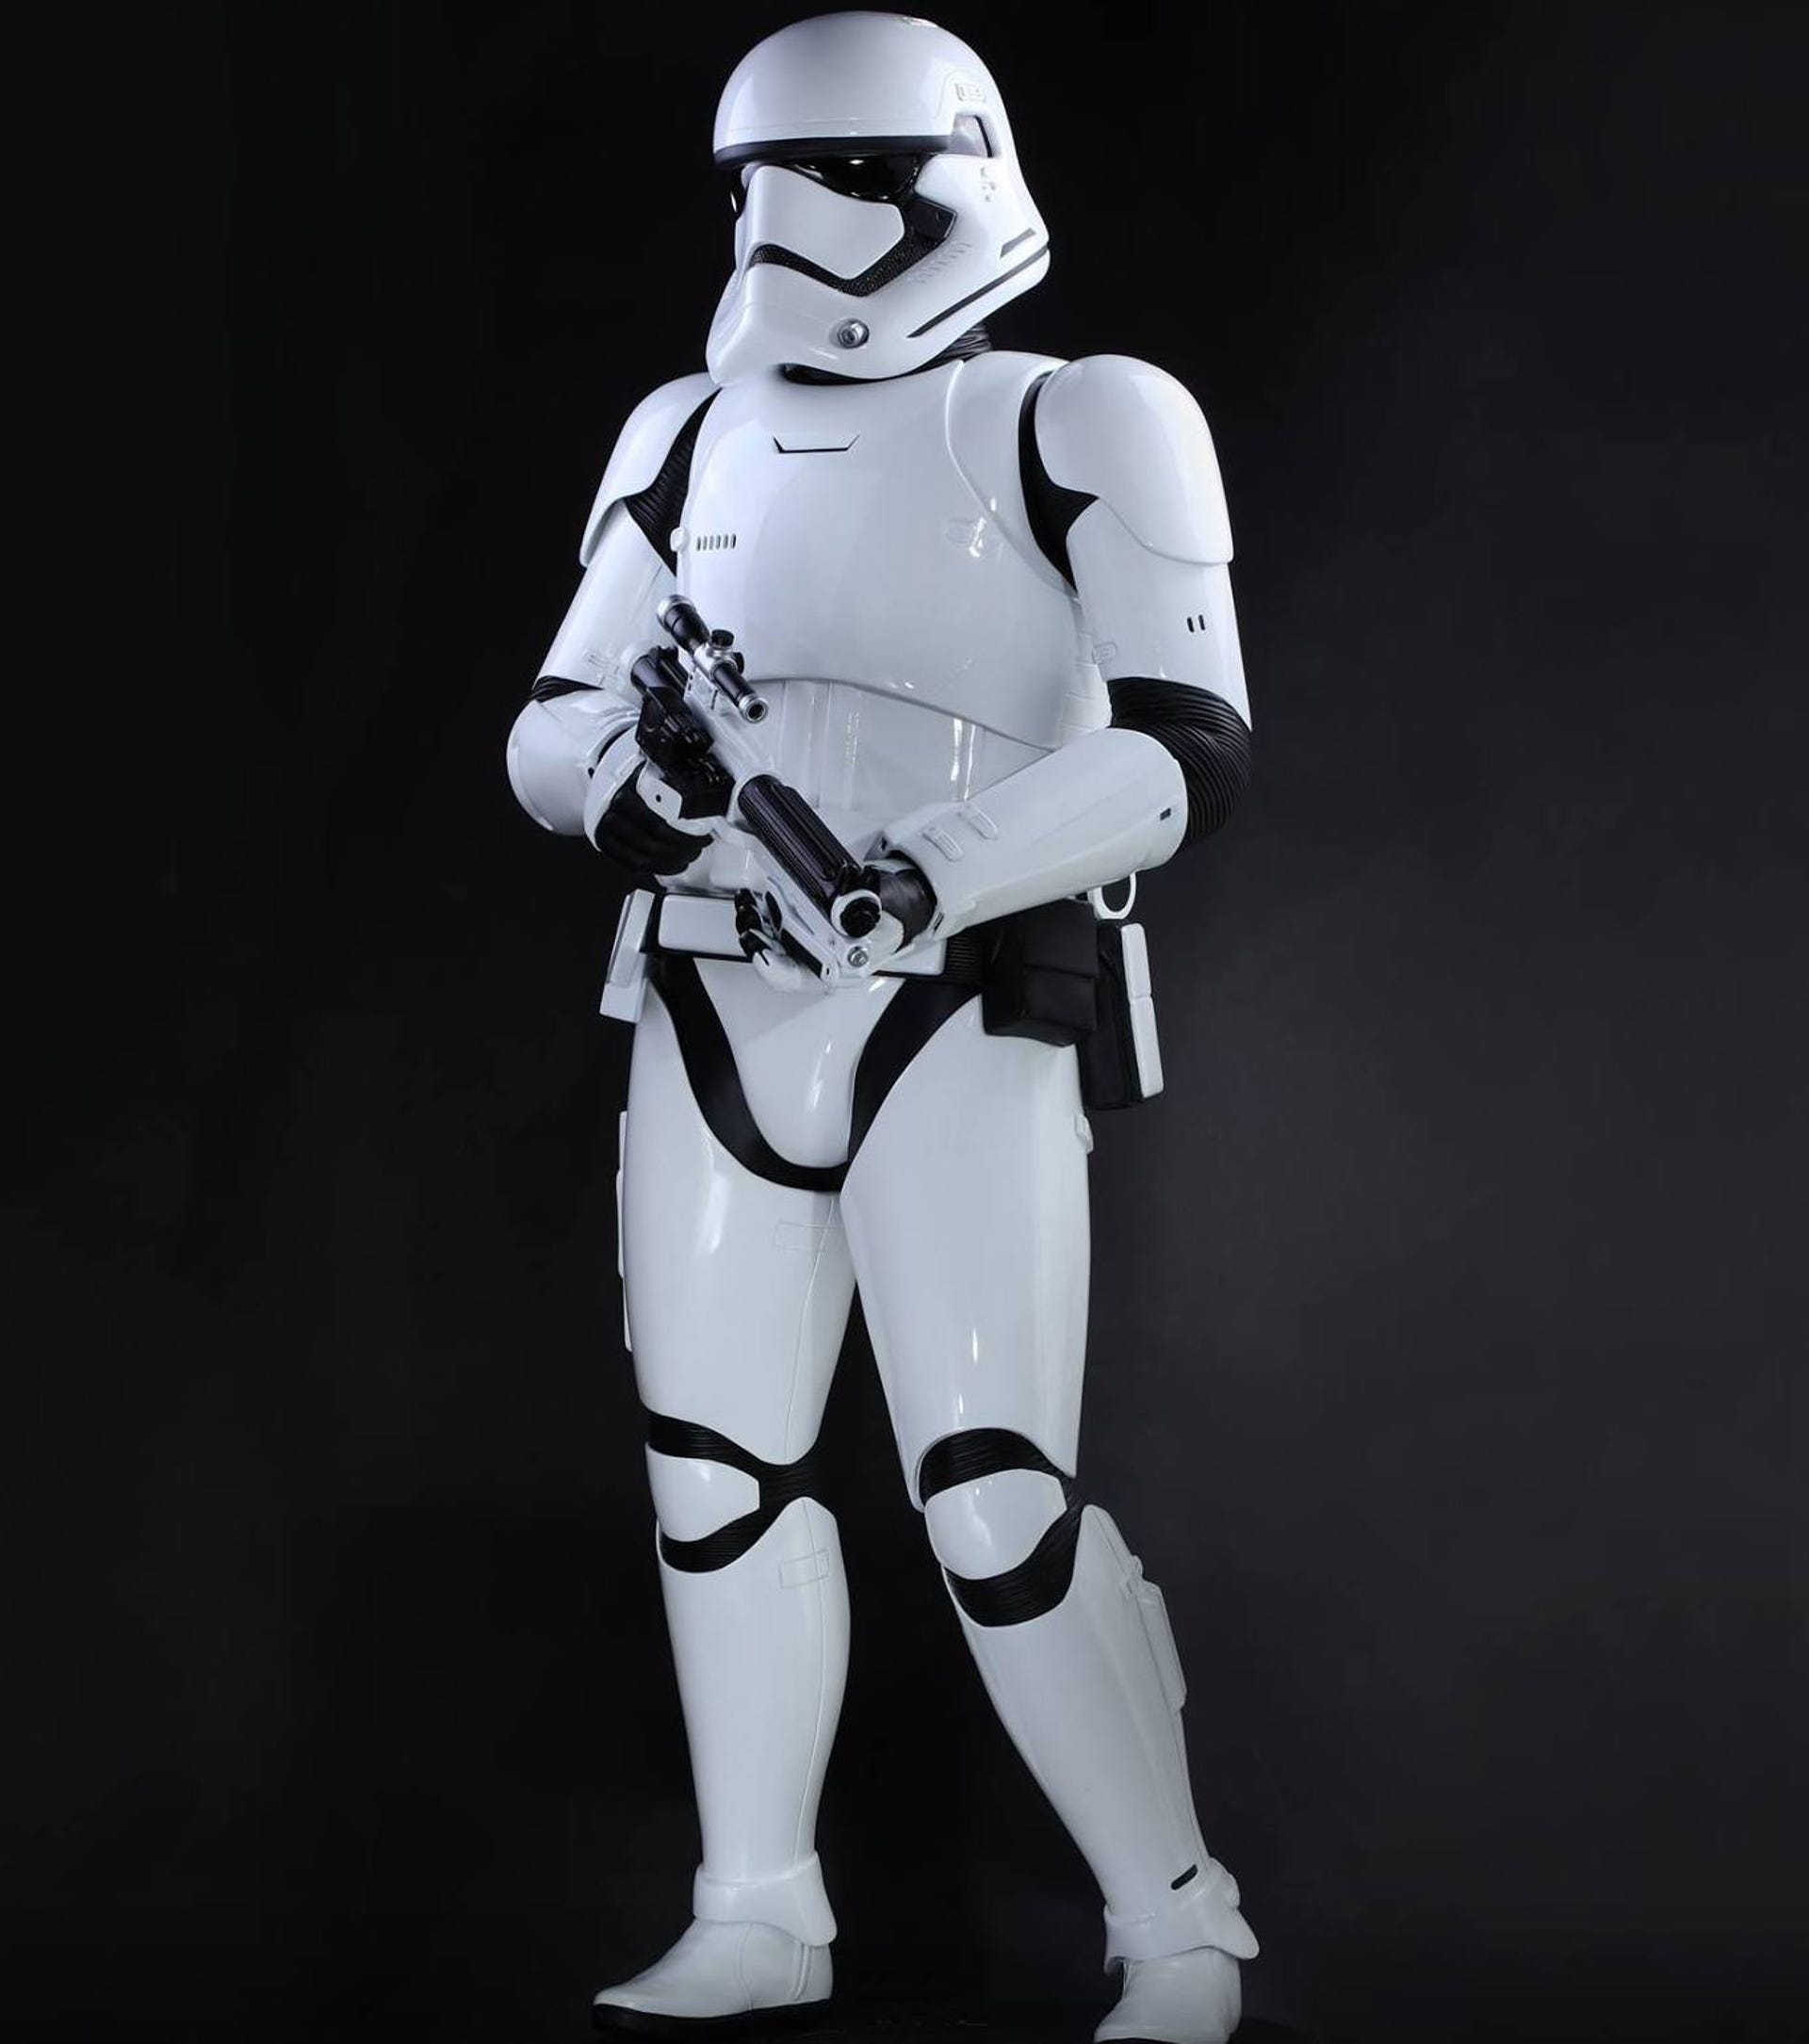 Life-size Stormtrooper prototype